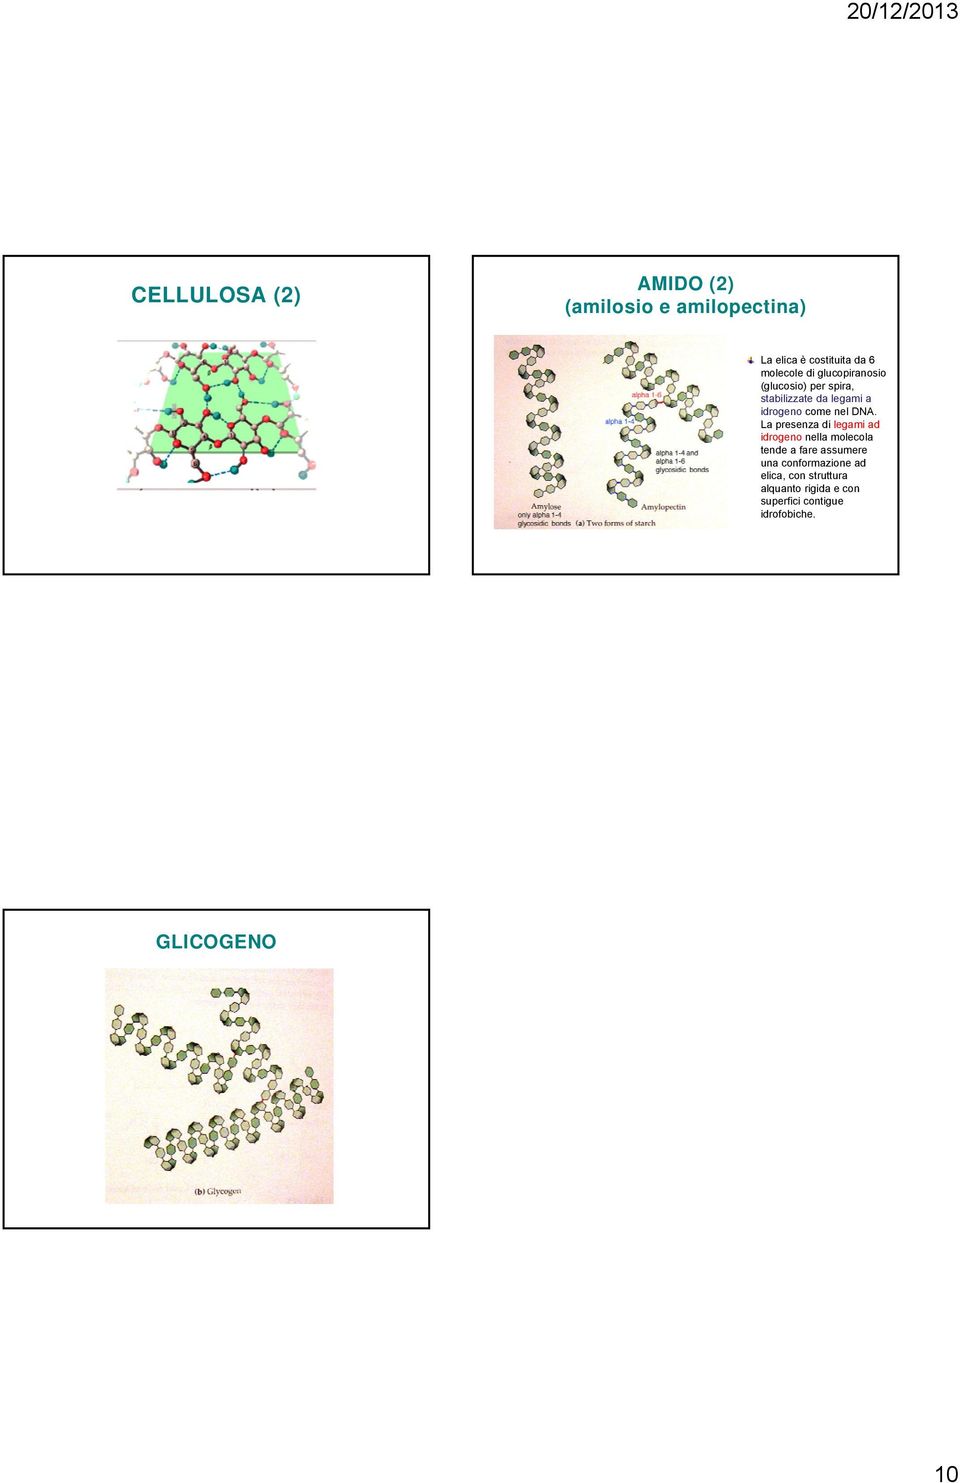 La presenza di legami ad idrogeno nella molecola tende a fare assumere una conformazione